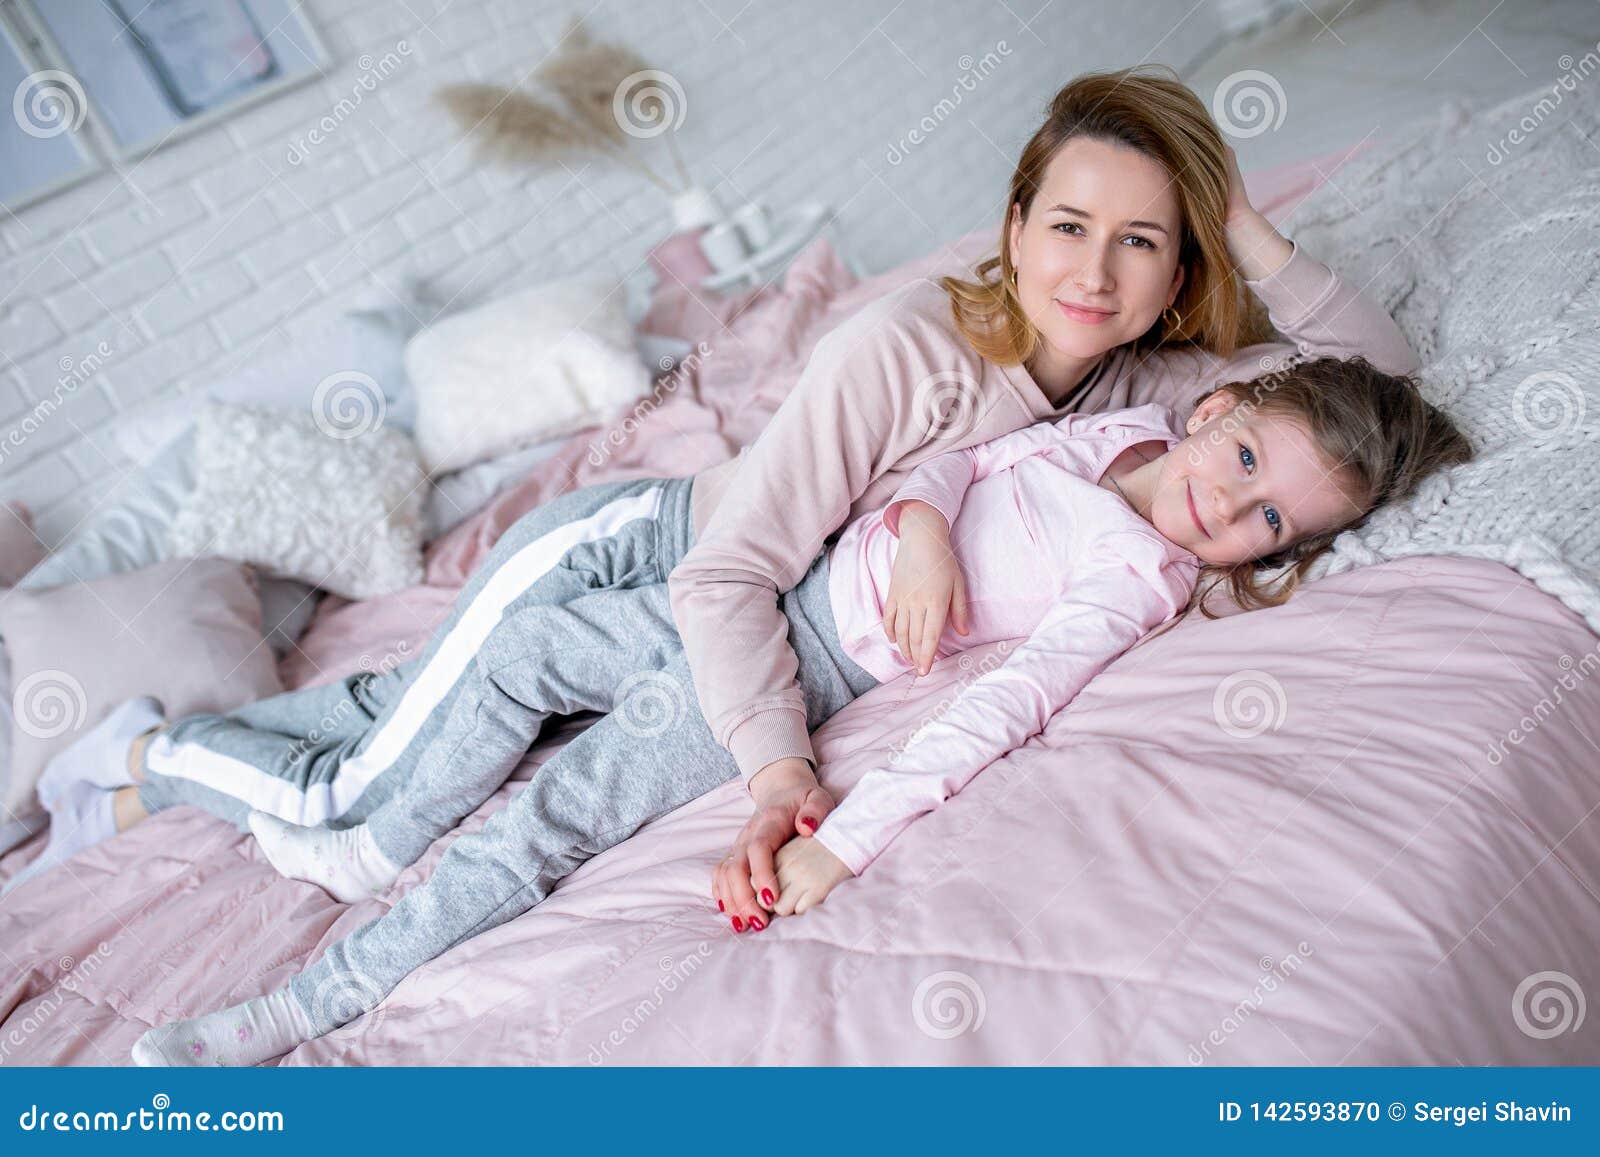 Мама с дочкой в постели. Мама с дочкой лежат на кровати. Фотосессия мама и дочь в спальне. Дочка лежит на маме. Мама с дочкой фотосессия на кровати.